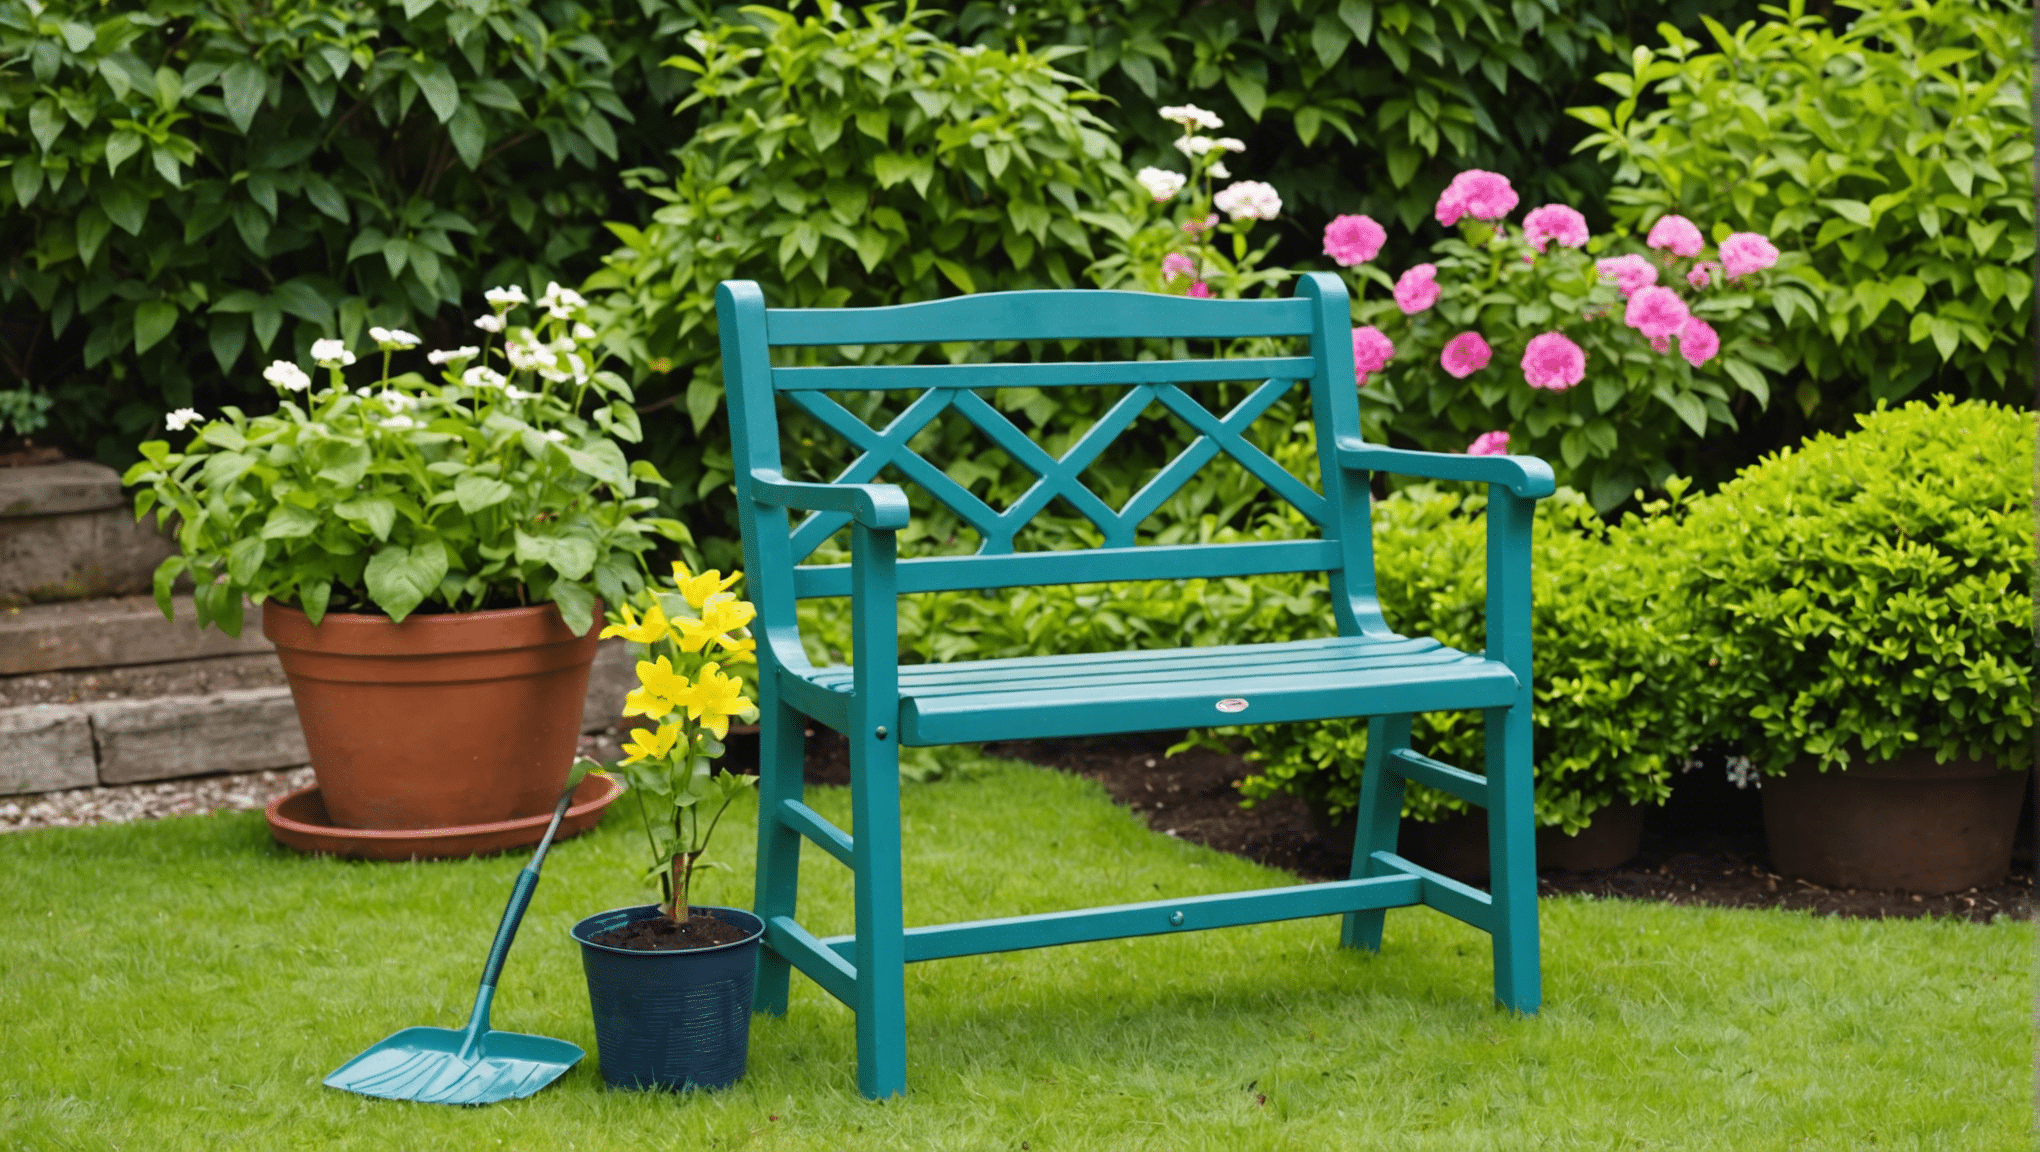 upptäck fördelarna med att använda en trädgårdsstol och hur den kan förbättra din trädgårdsupplevelse. rädda din rygg och knän medan du njuter av din tid i trädgården!